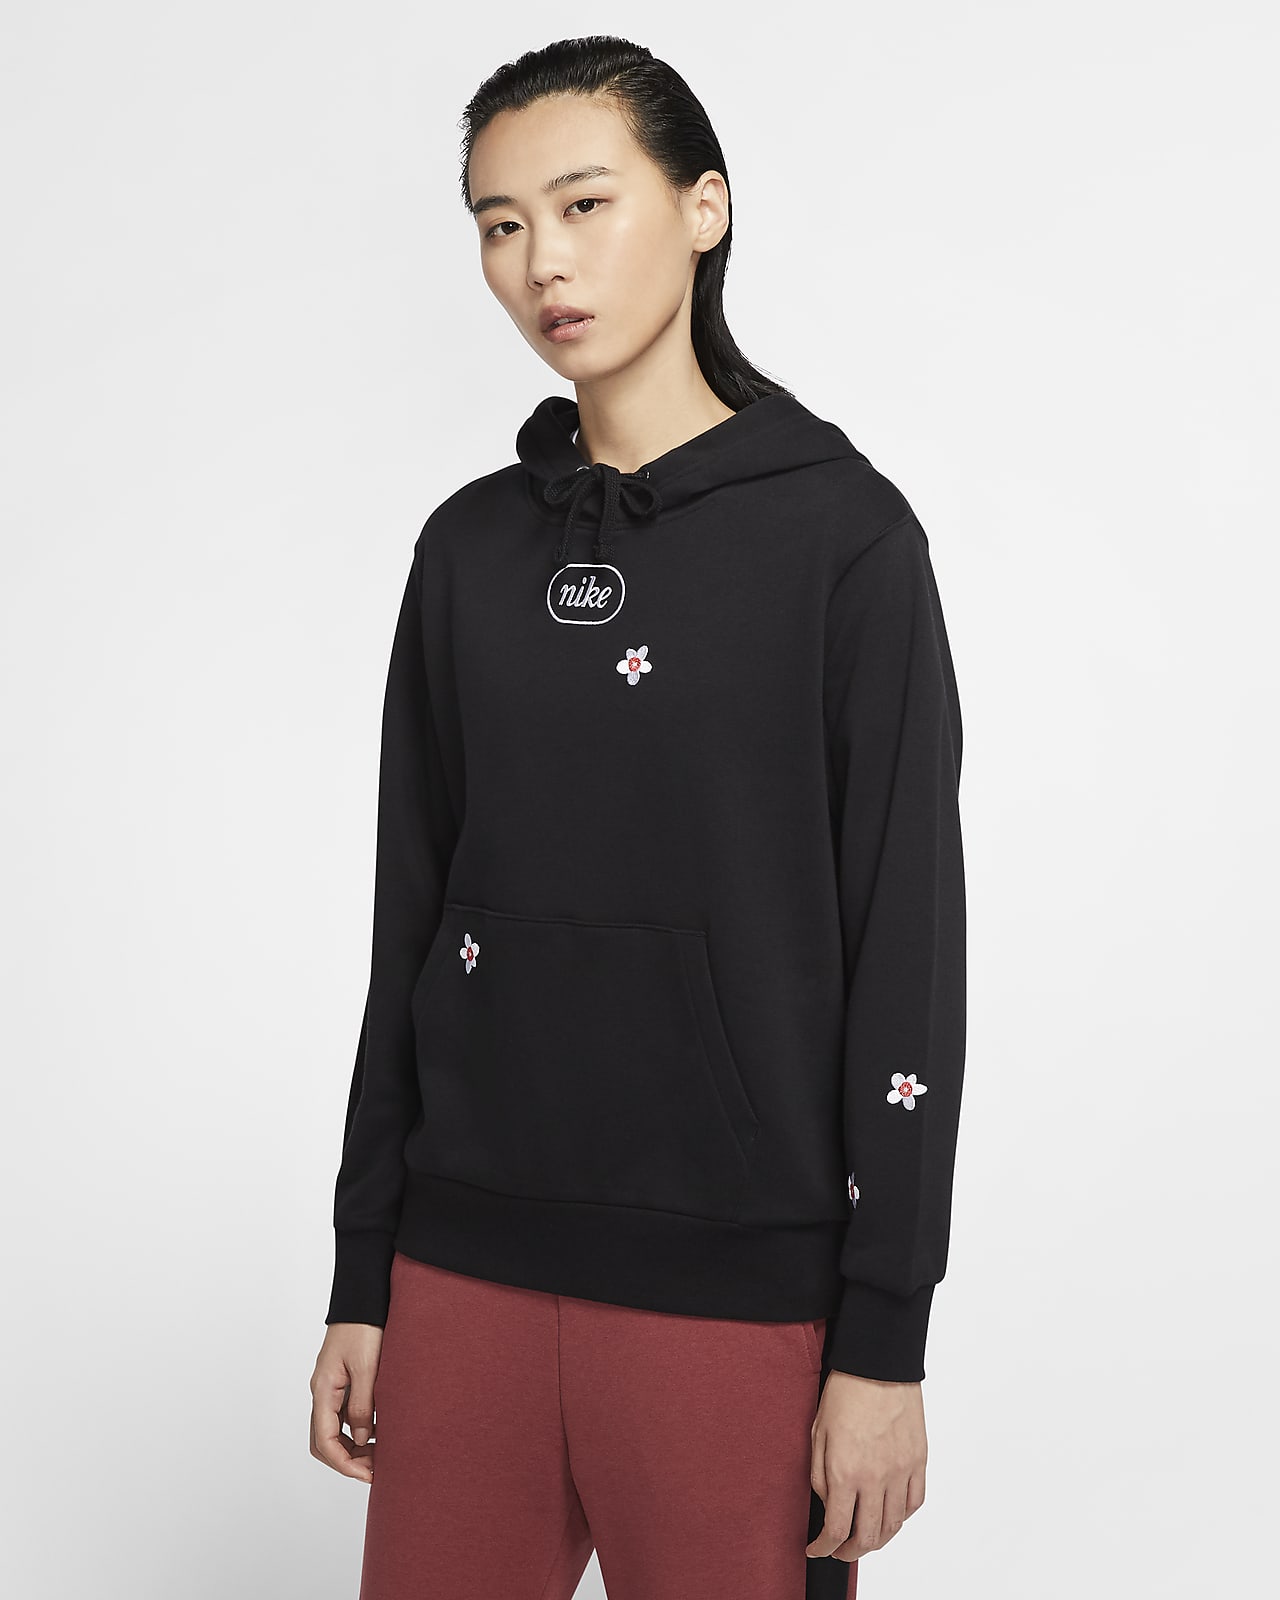 nike sportswear women's hoodie